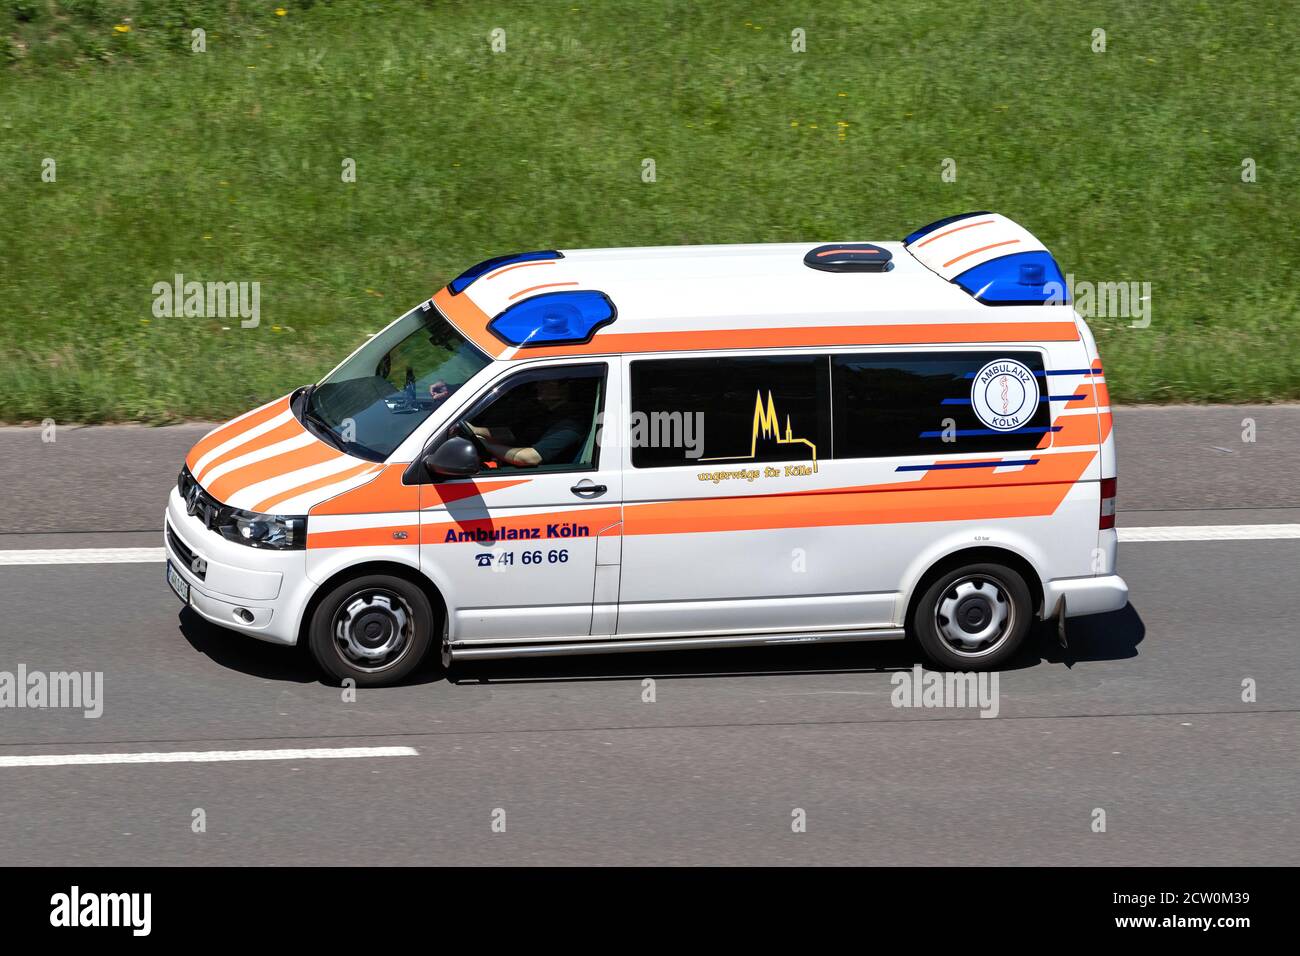 Ambulanz Köln Ambulanz auf der Autobahn. Stockfoto